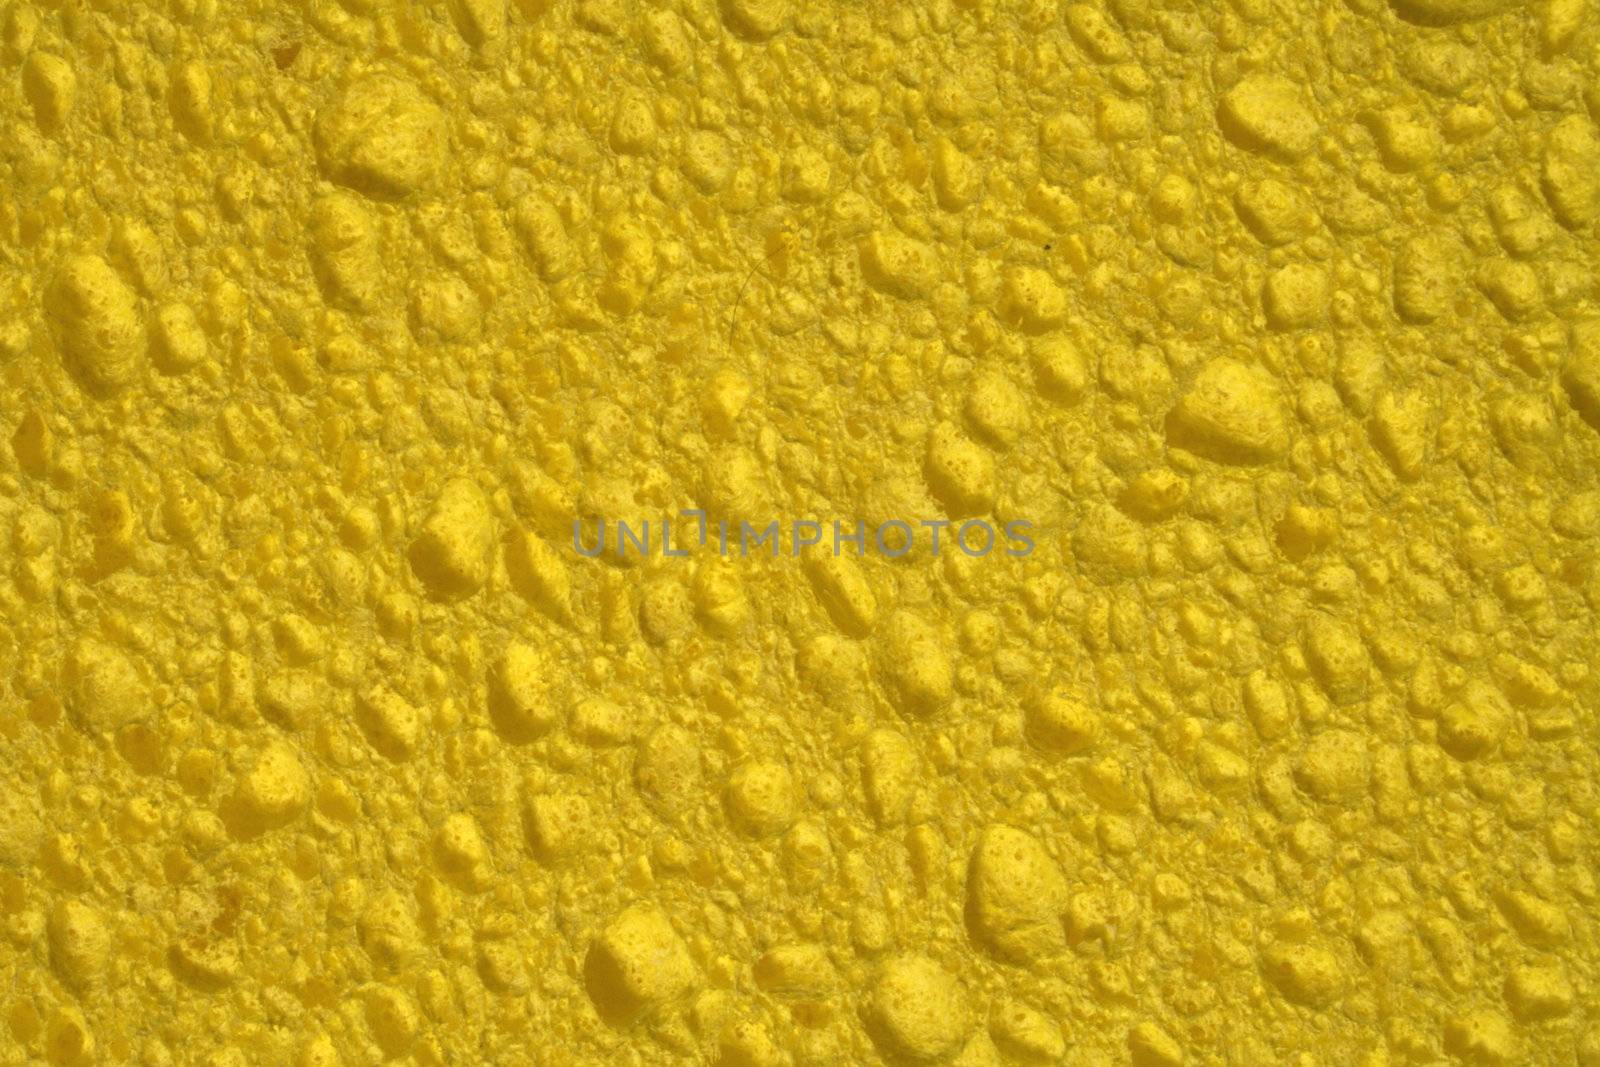 Yellow sponge by njnightsky